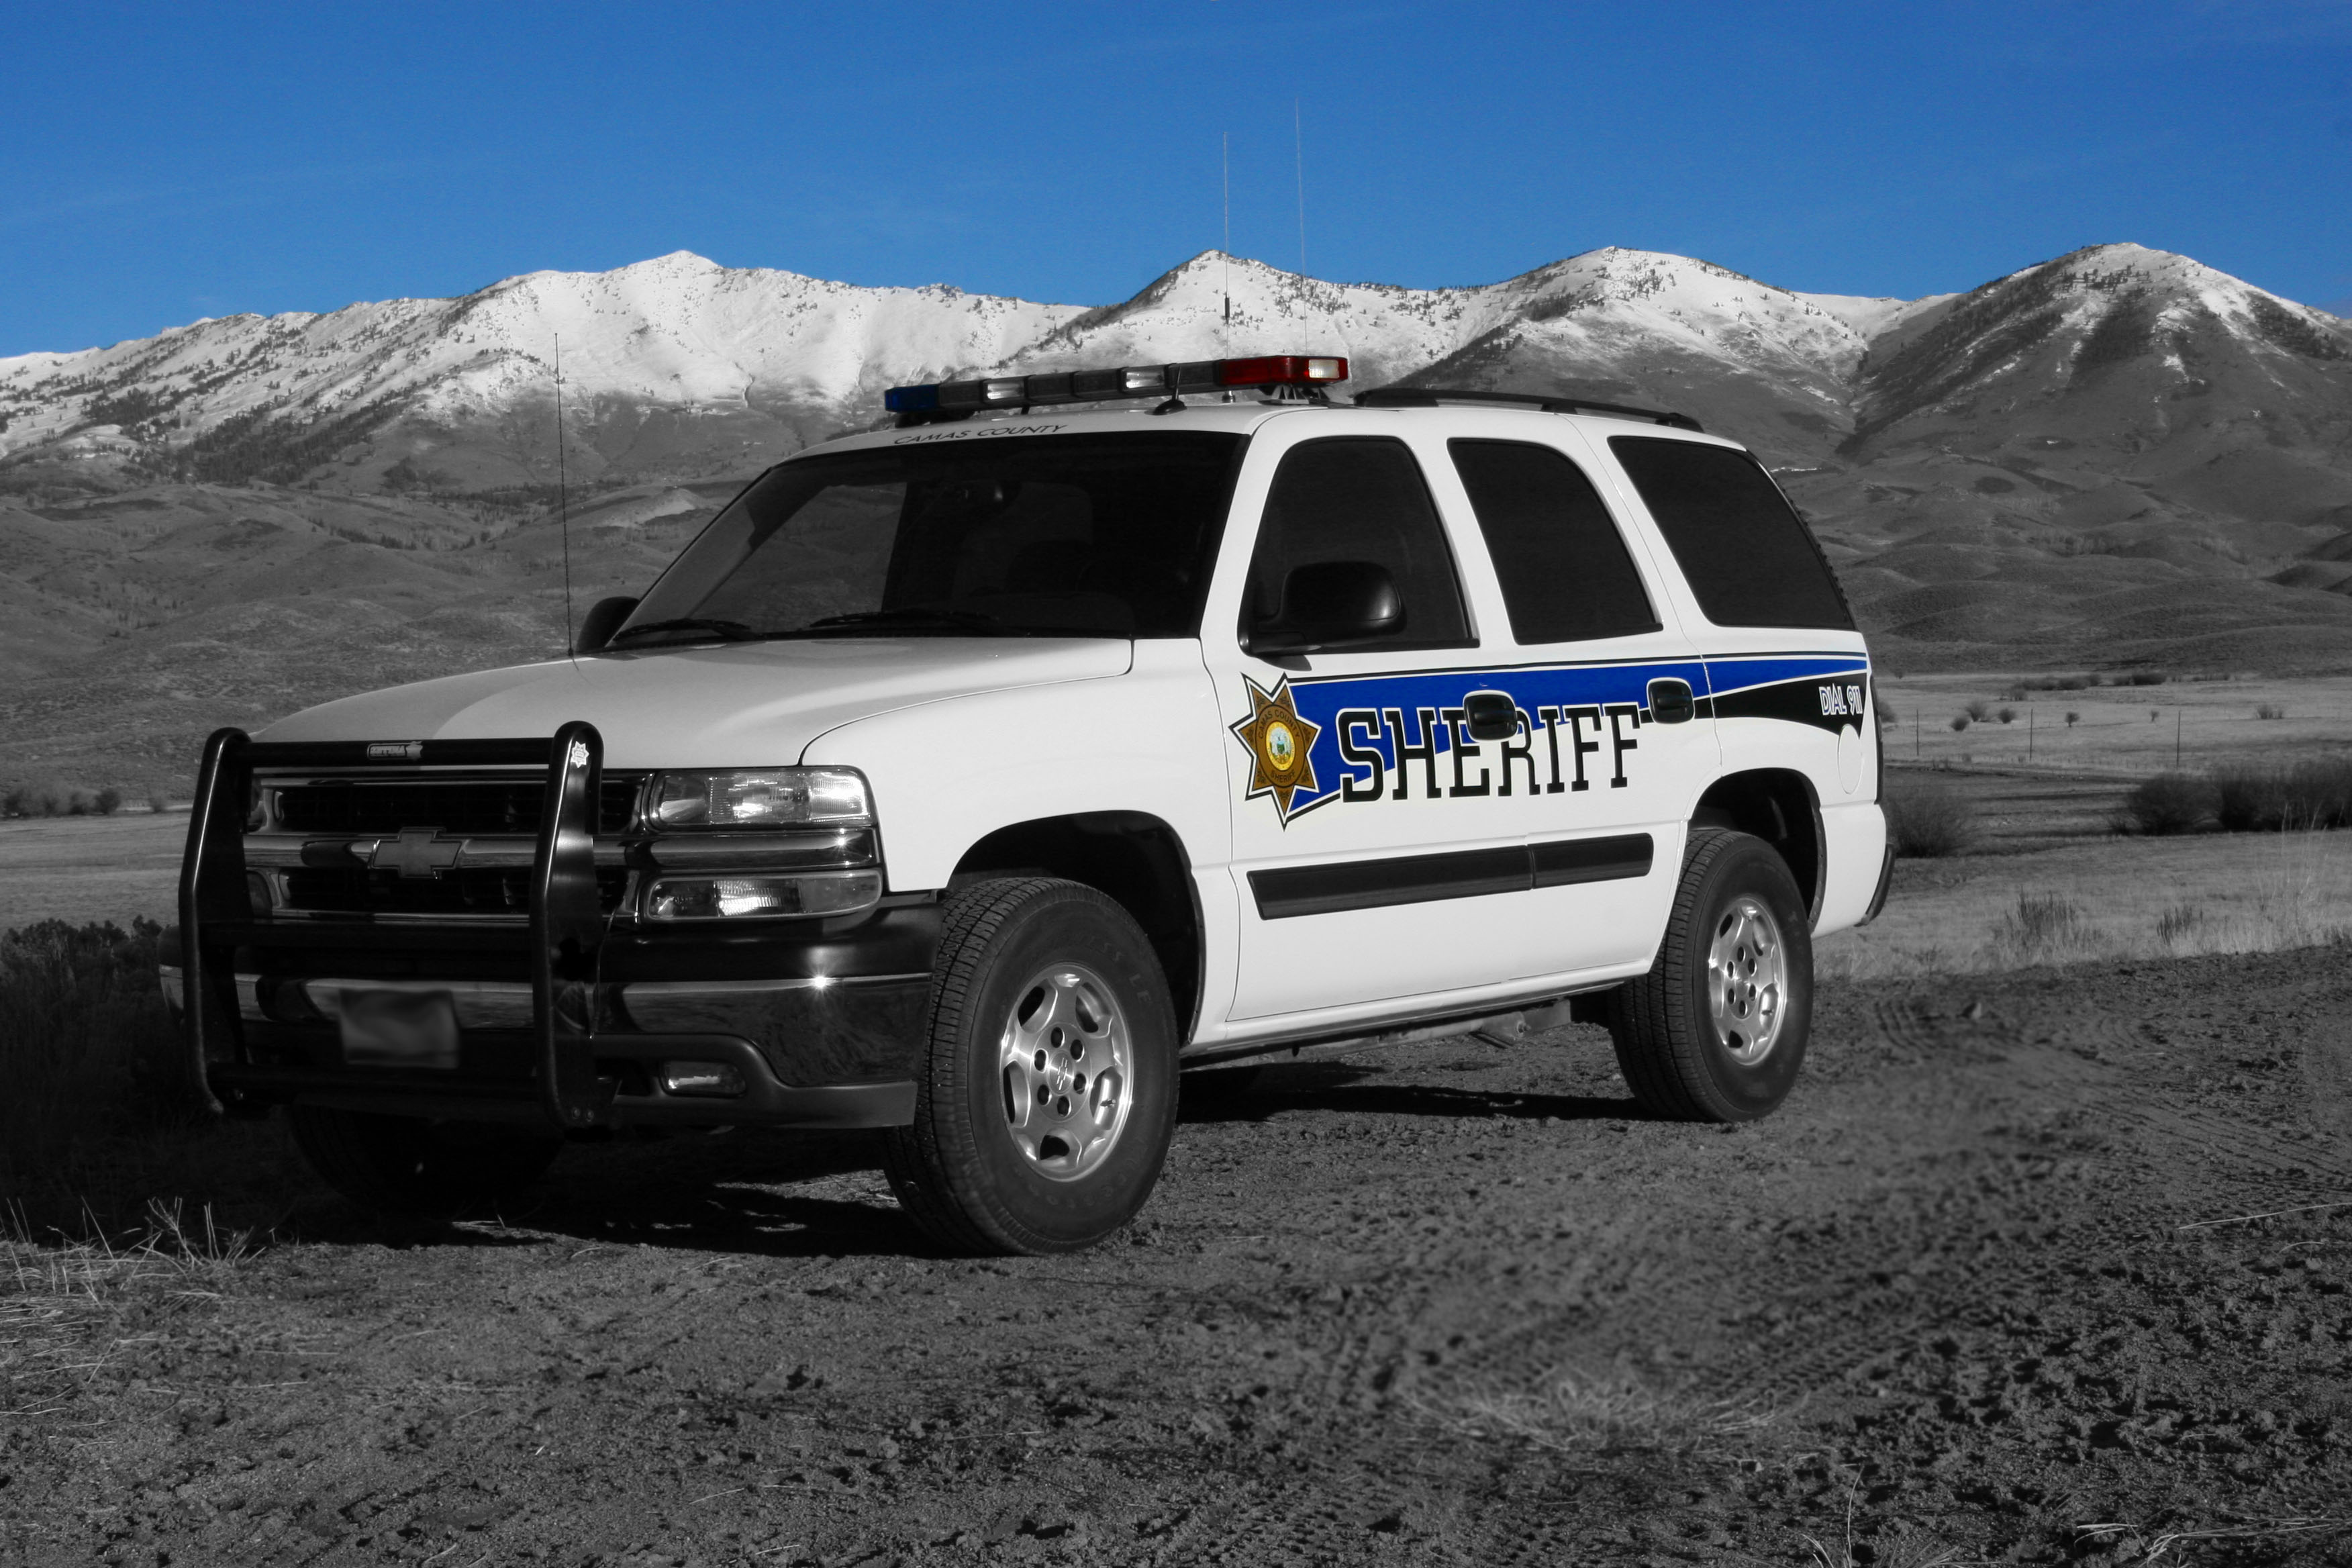 Sheriff’s Office | Camas County, Idaho